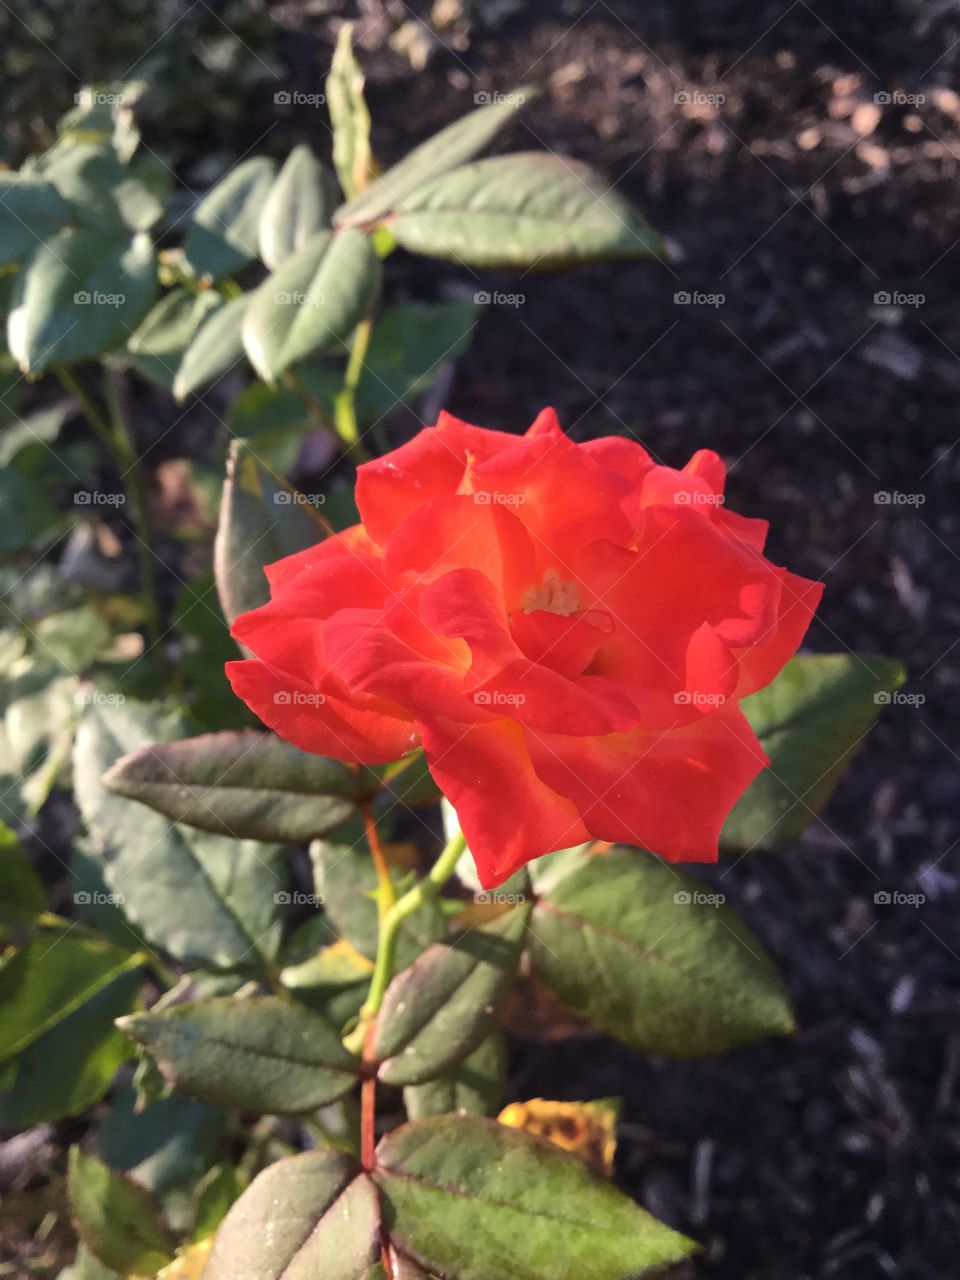 Red rose in sunrise light 